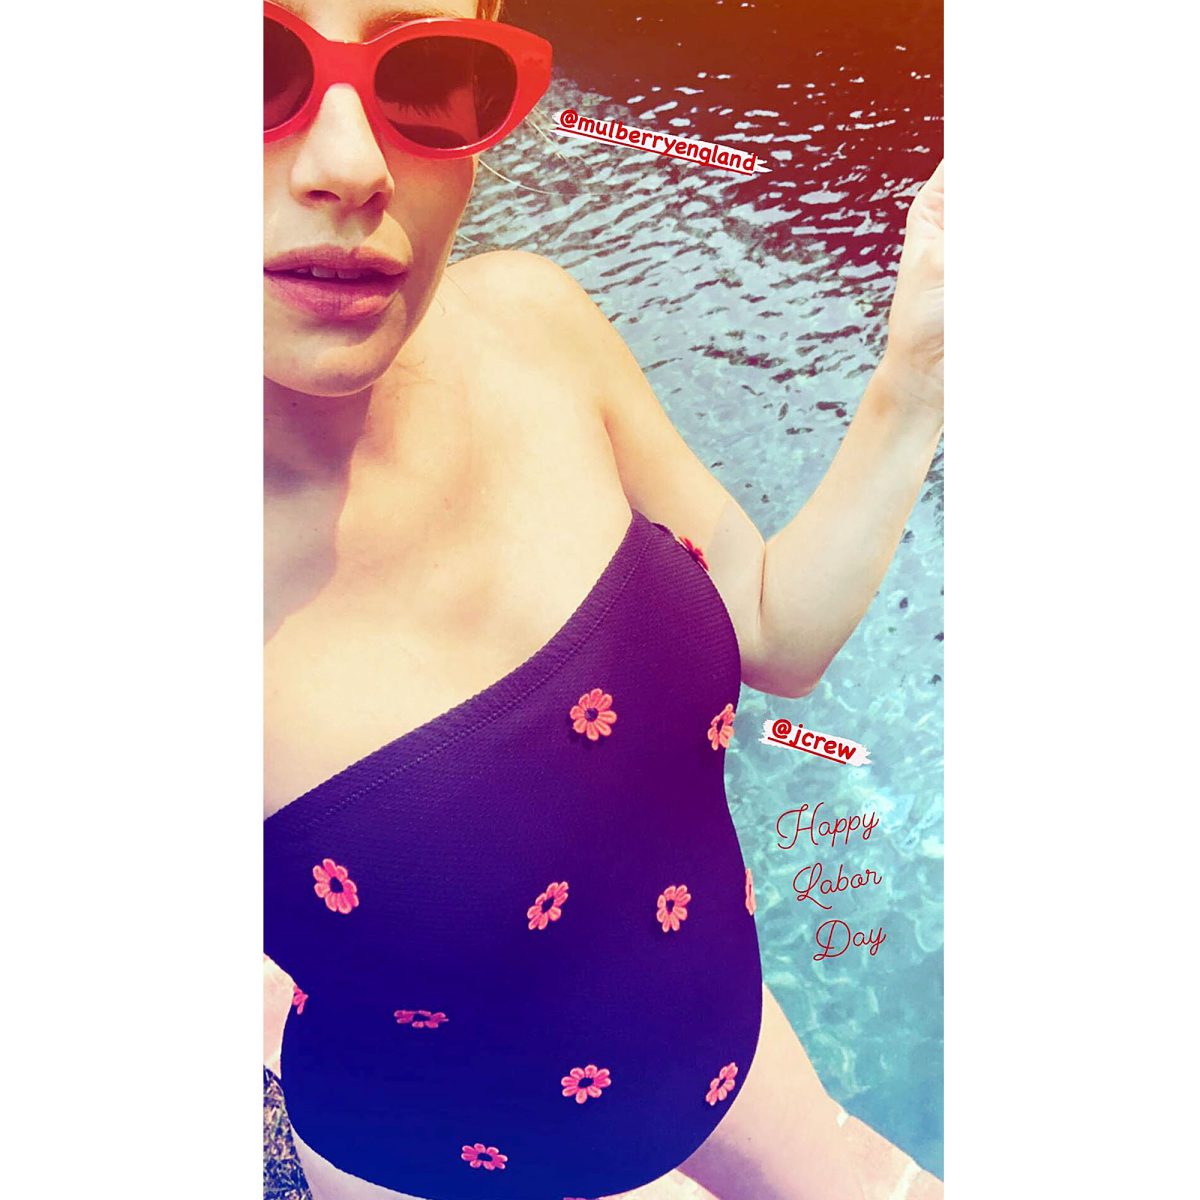 Emma Roberts Swim Suit 2017 Wallpapers